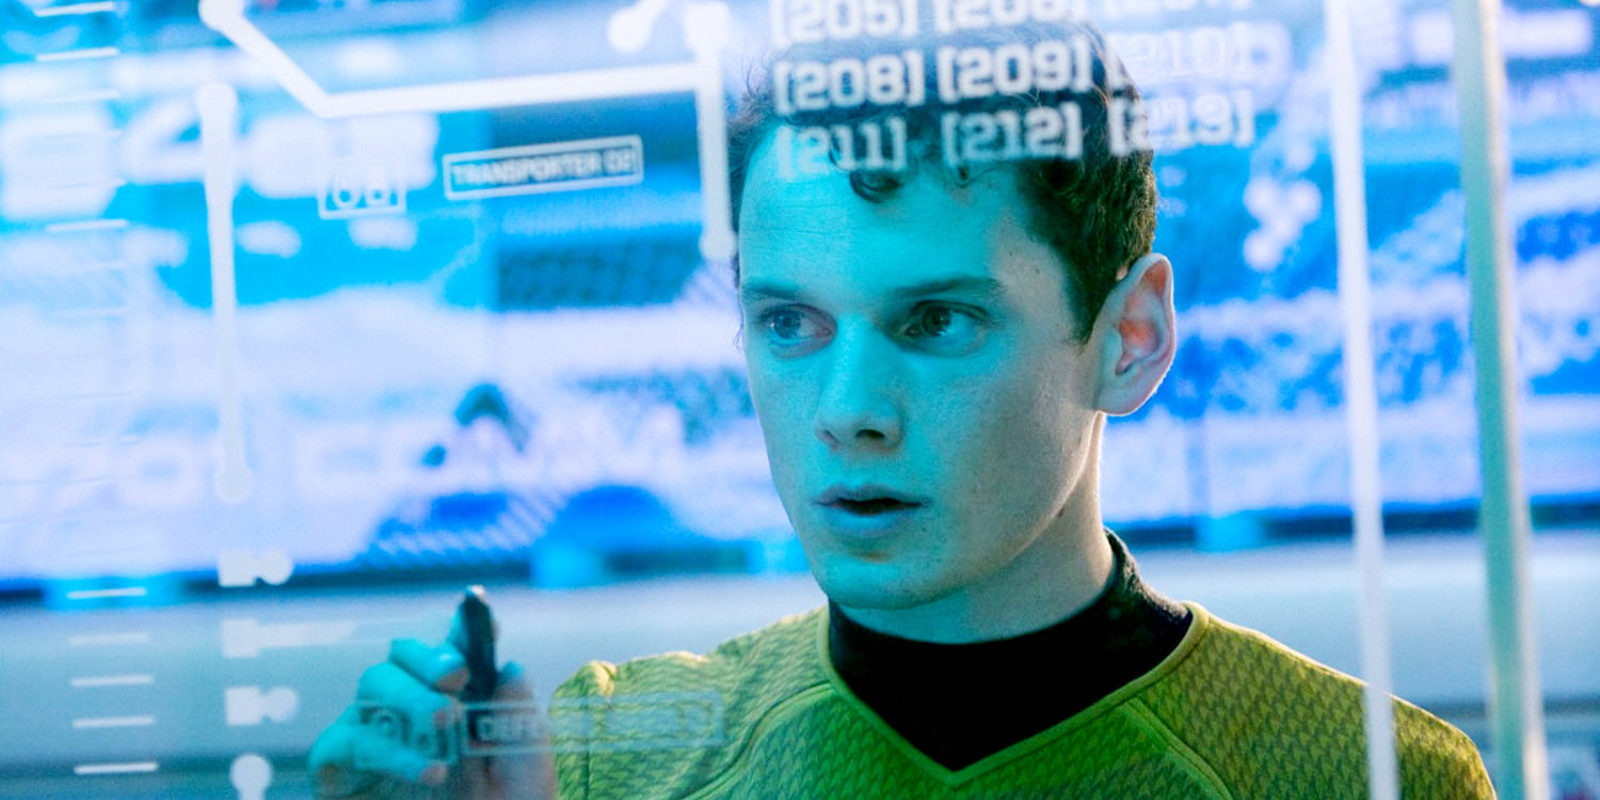 Muere el actor de 'Star Trek' Anton Yelchin a los 27 años atropellado en su propia casa